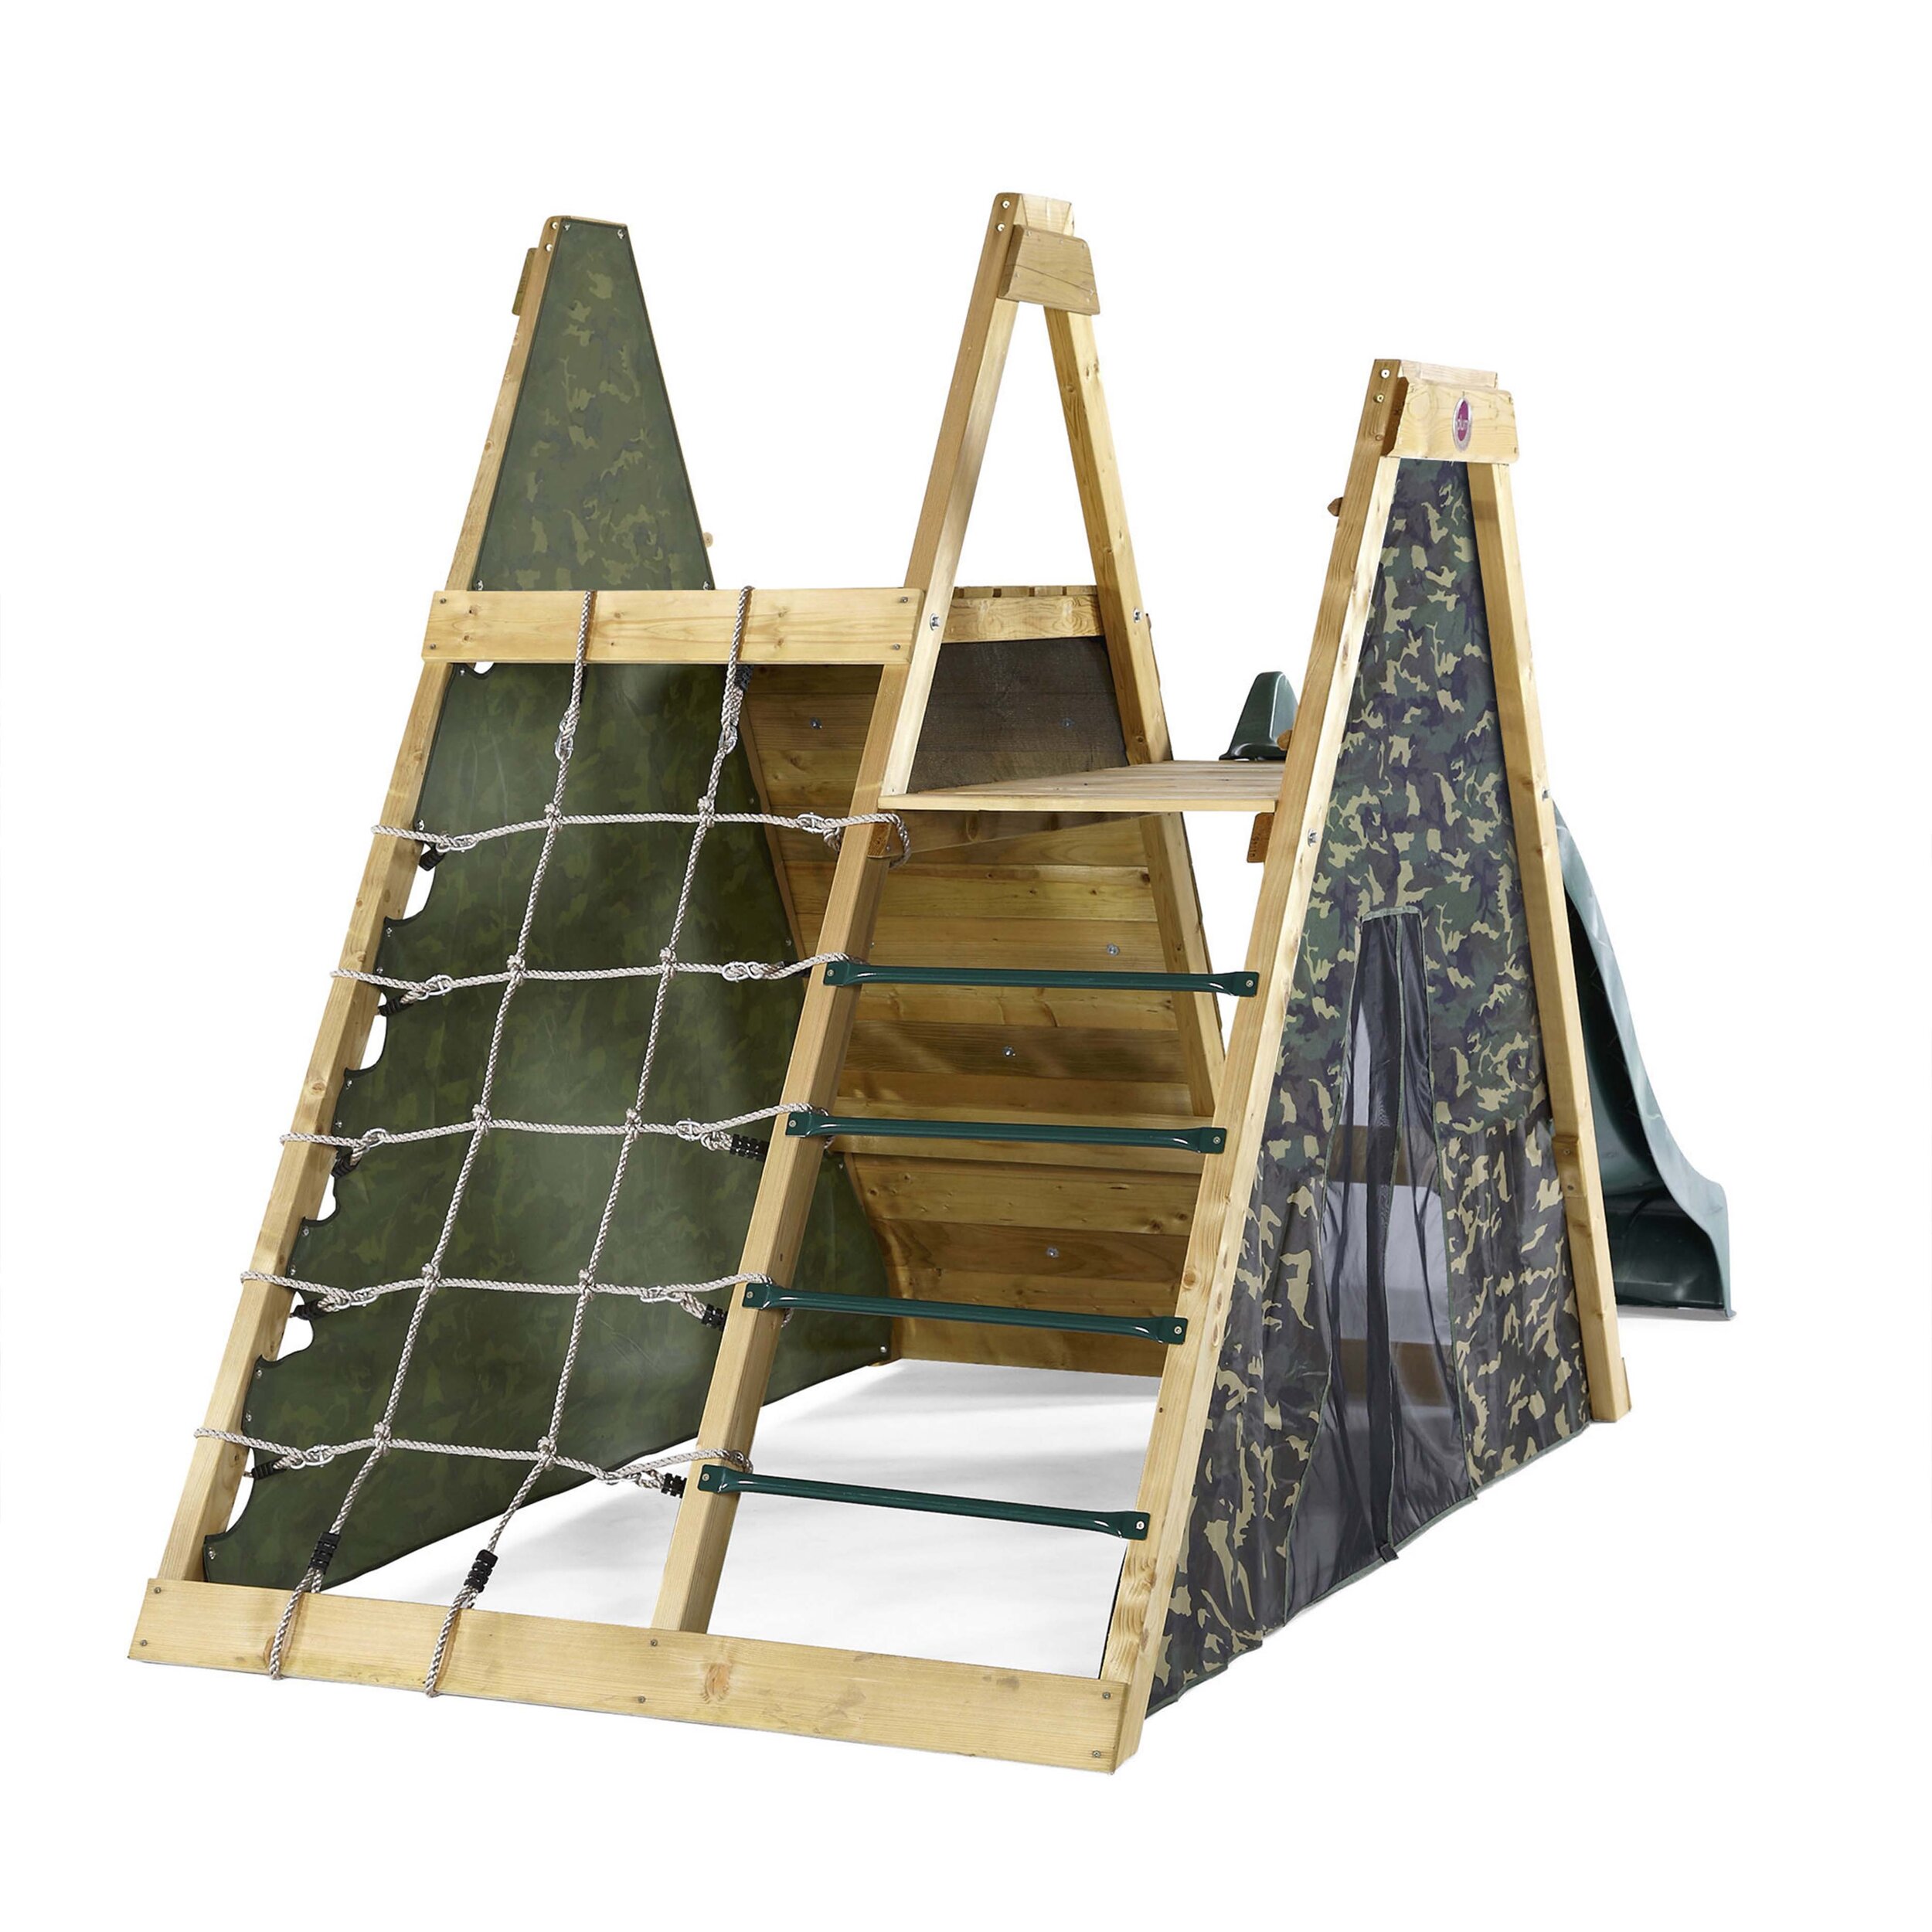 plum-pyramid-legno-centro-giochi-arrampicare-esterno-babylove2000-prodotto-rete-corda-scala-tenda.jpg